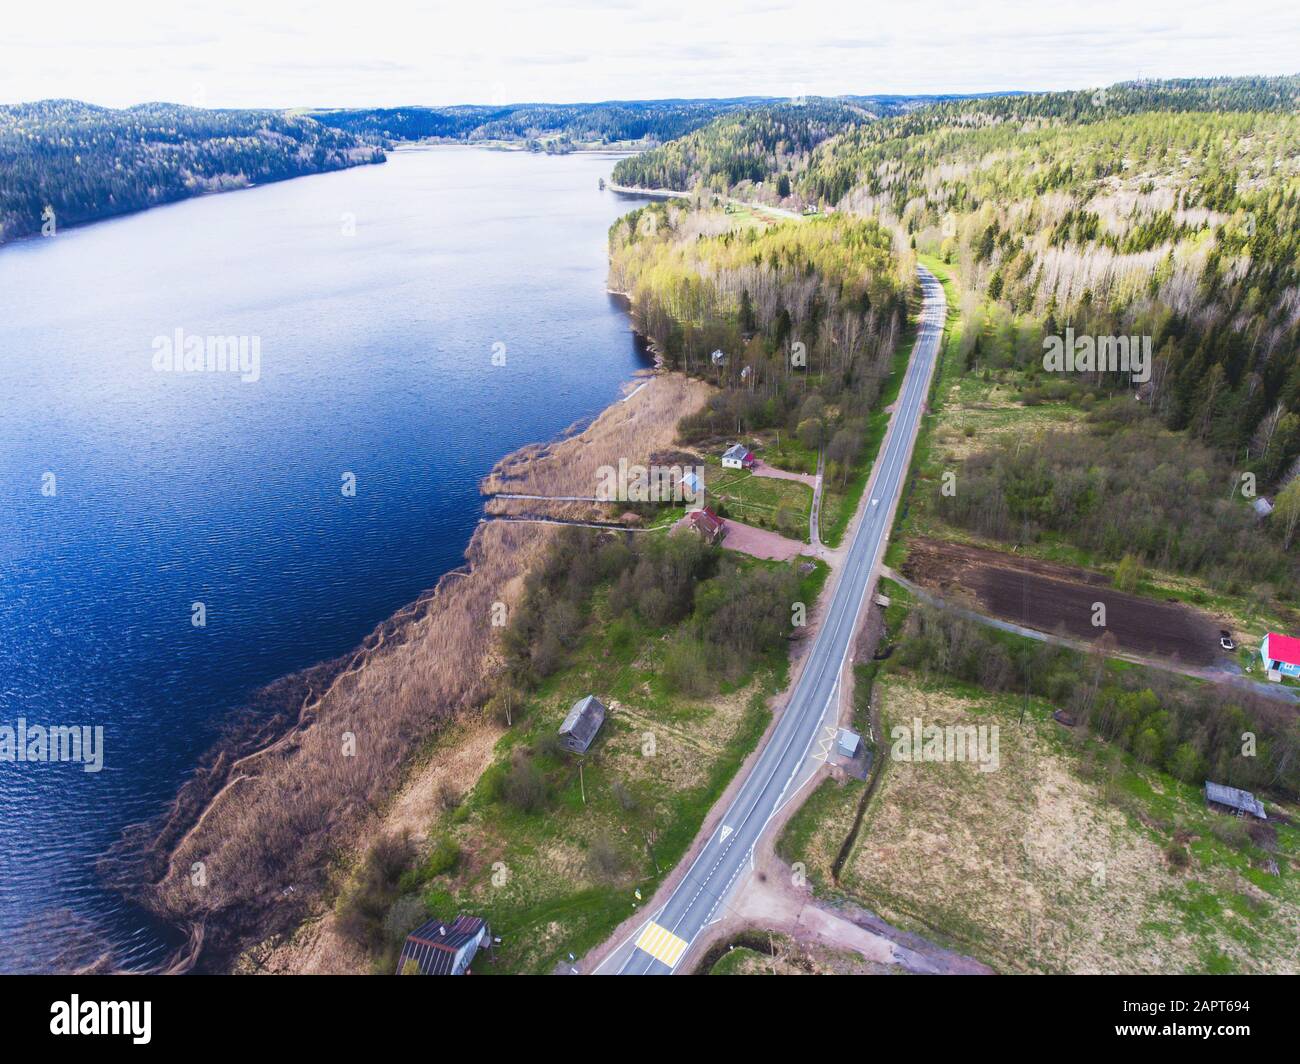 Schöner Blick von einer Straße durch den schönen See und Wald, auf beiden  Seiten mit Wasser umgeben, oben von Drohne, luftige leuchtende Pic  Stockfotografie - Alamy